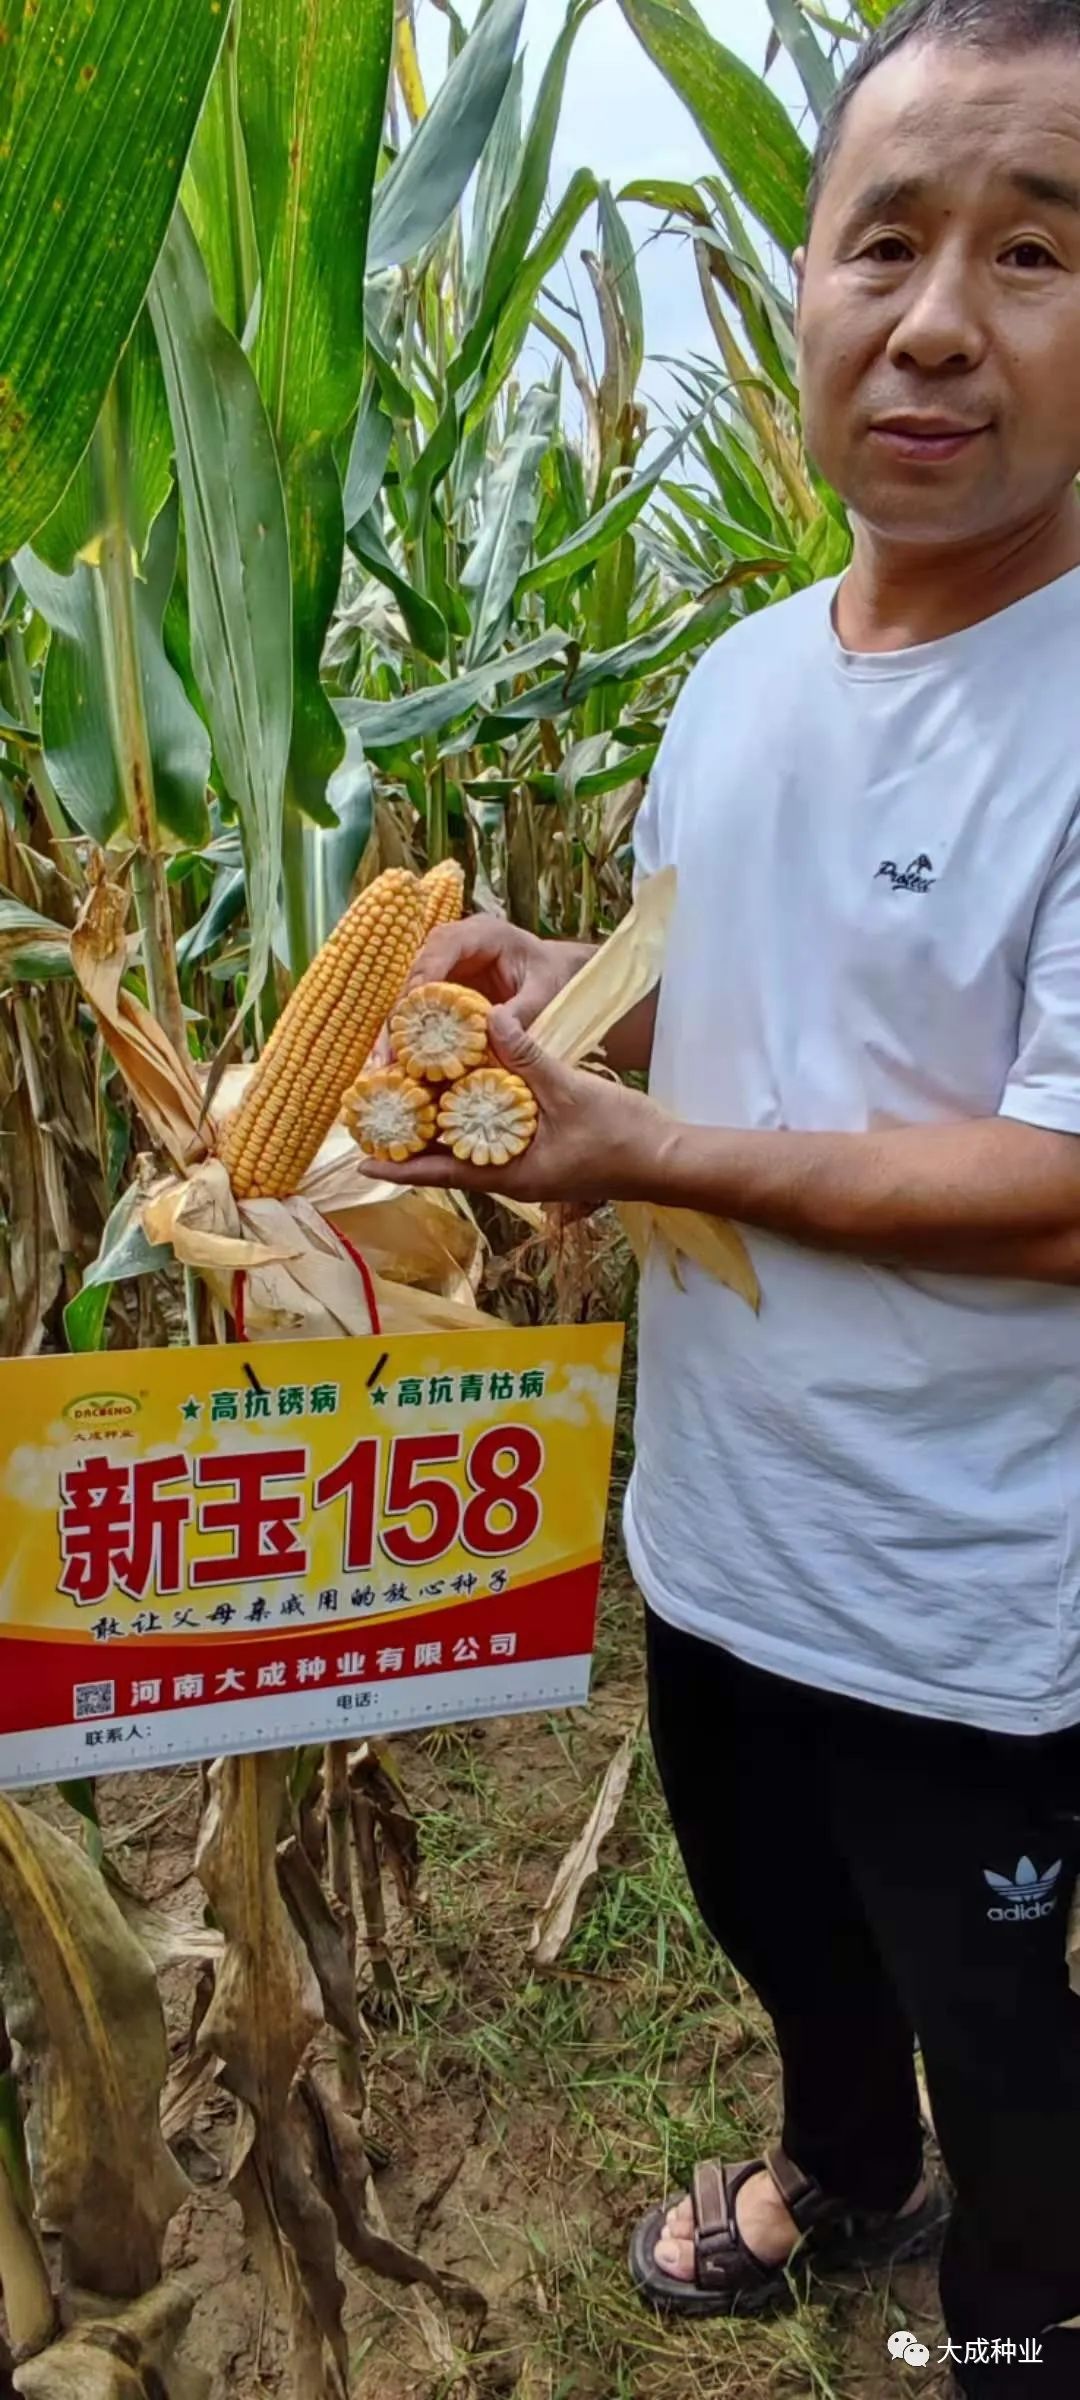 新玉158(审定编号:国审玉20190241)是一个特殊的玉米新品种:第一个